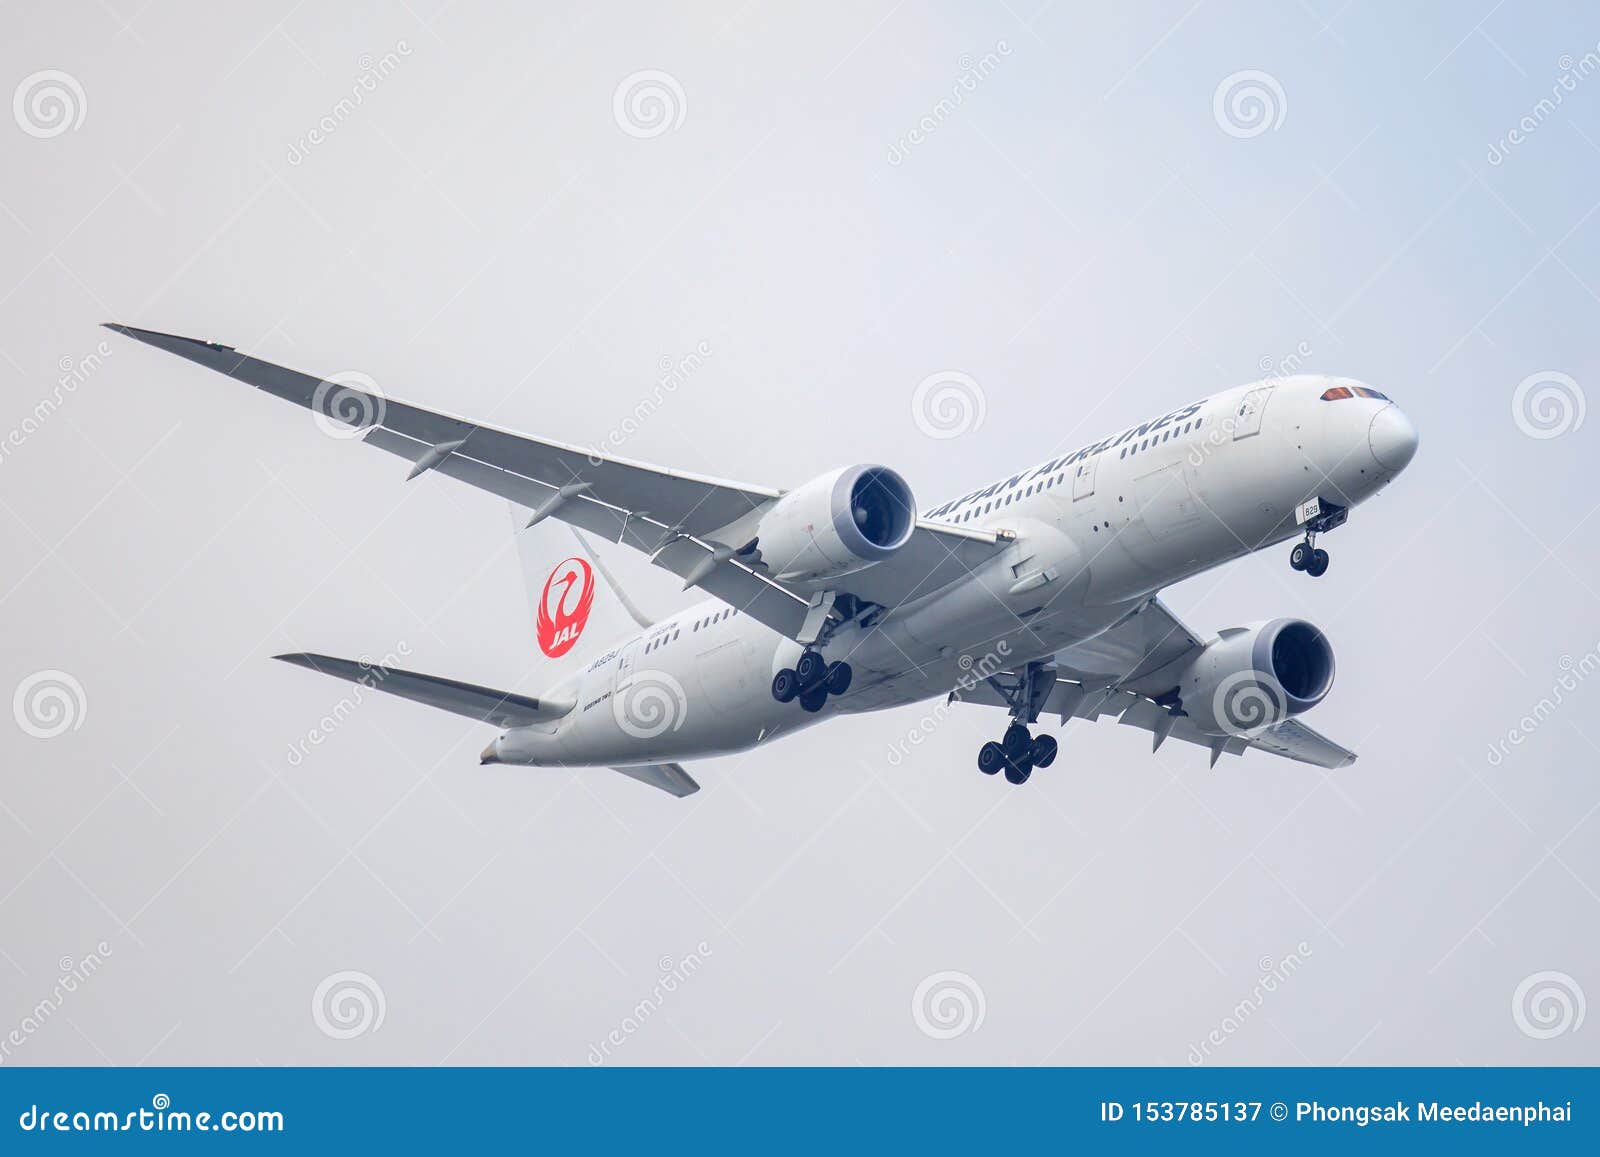 Jal或日本航空飞机或飞机在天空着陆对素万那普机场图库摄影片 图片包括有jal或日本航空飞机或飞机在天空着陆对素万那普机场